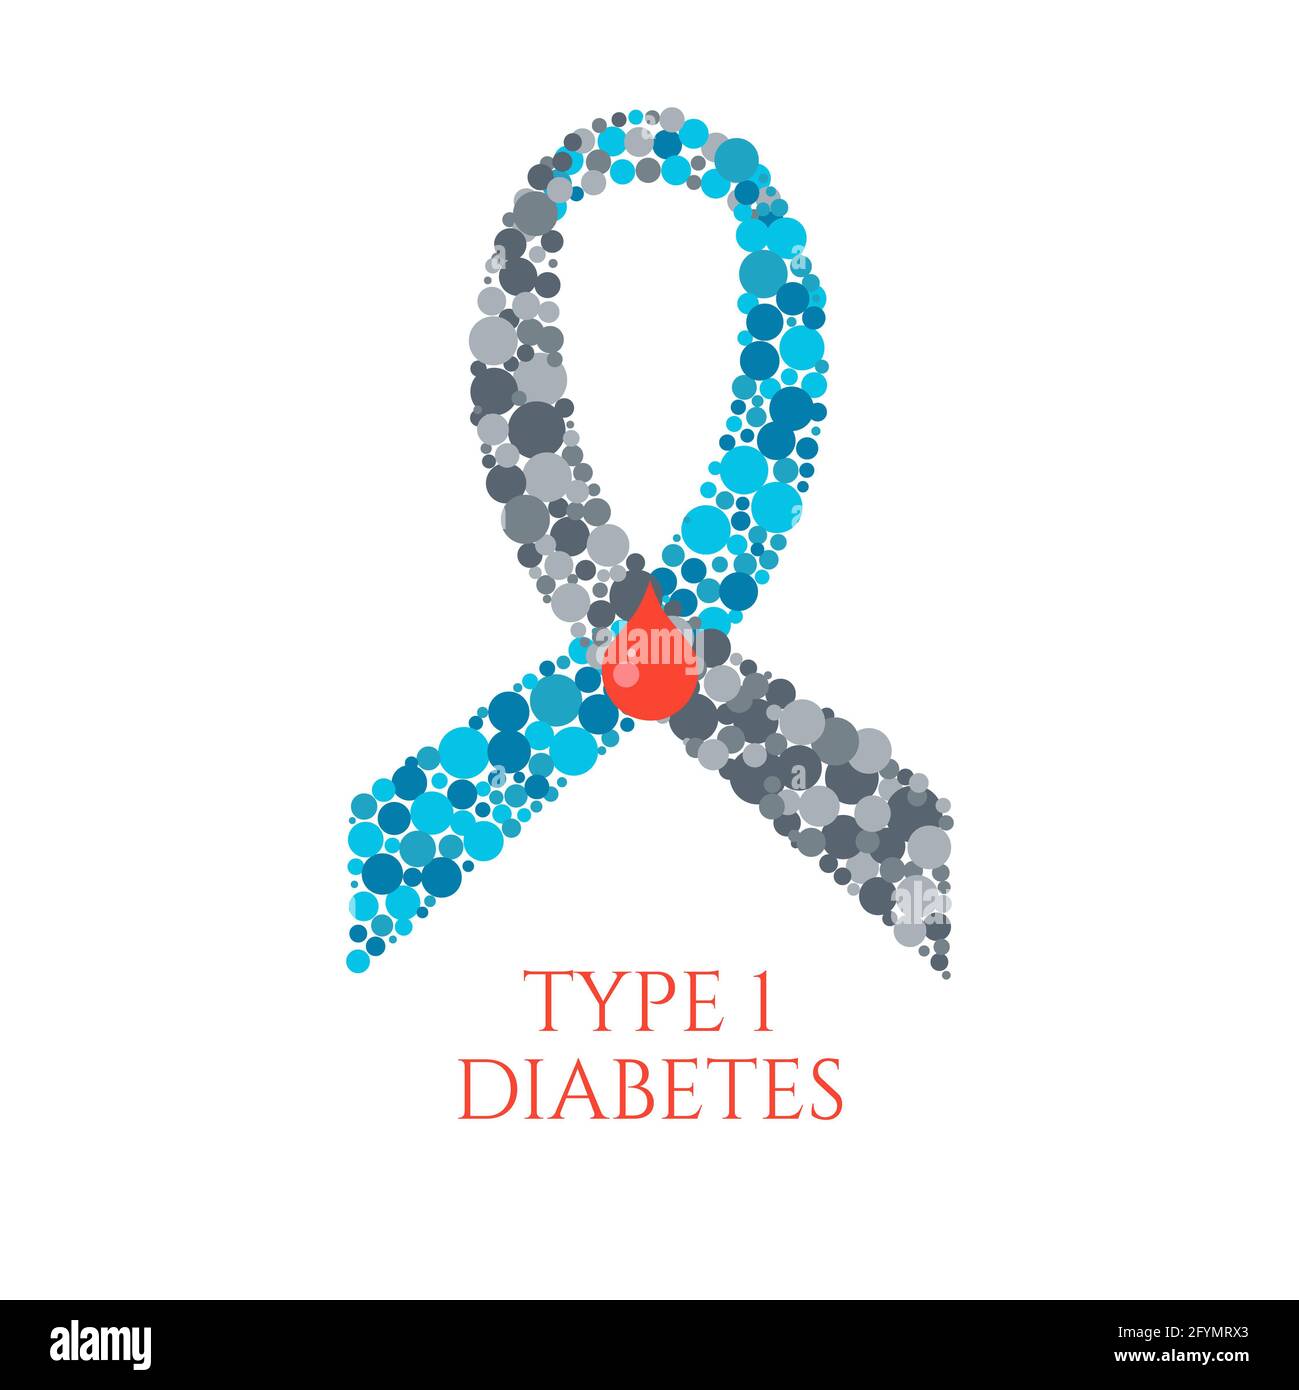 Diabetes type 1, conceptual illustration Stock Photo